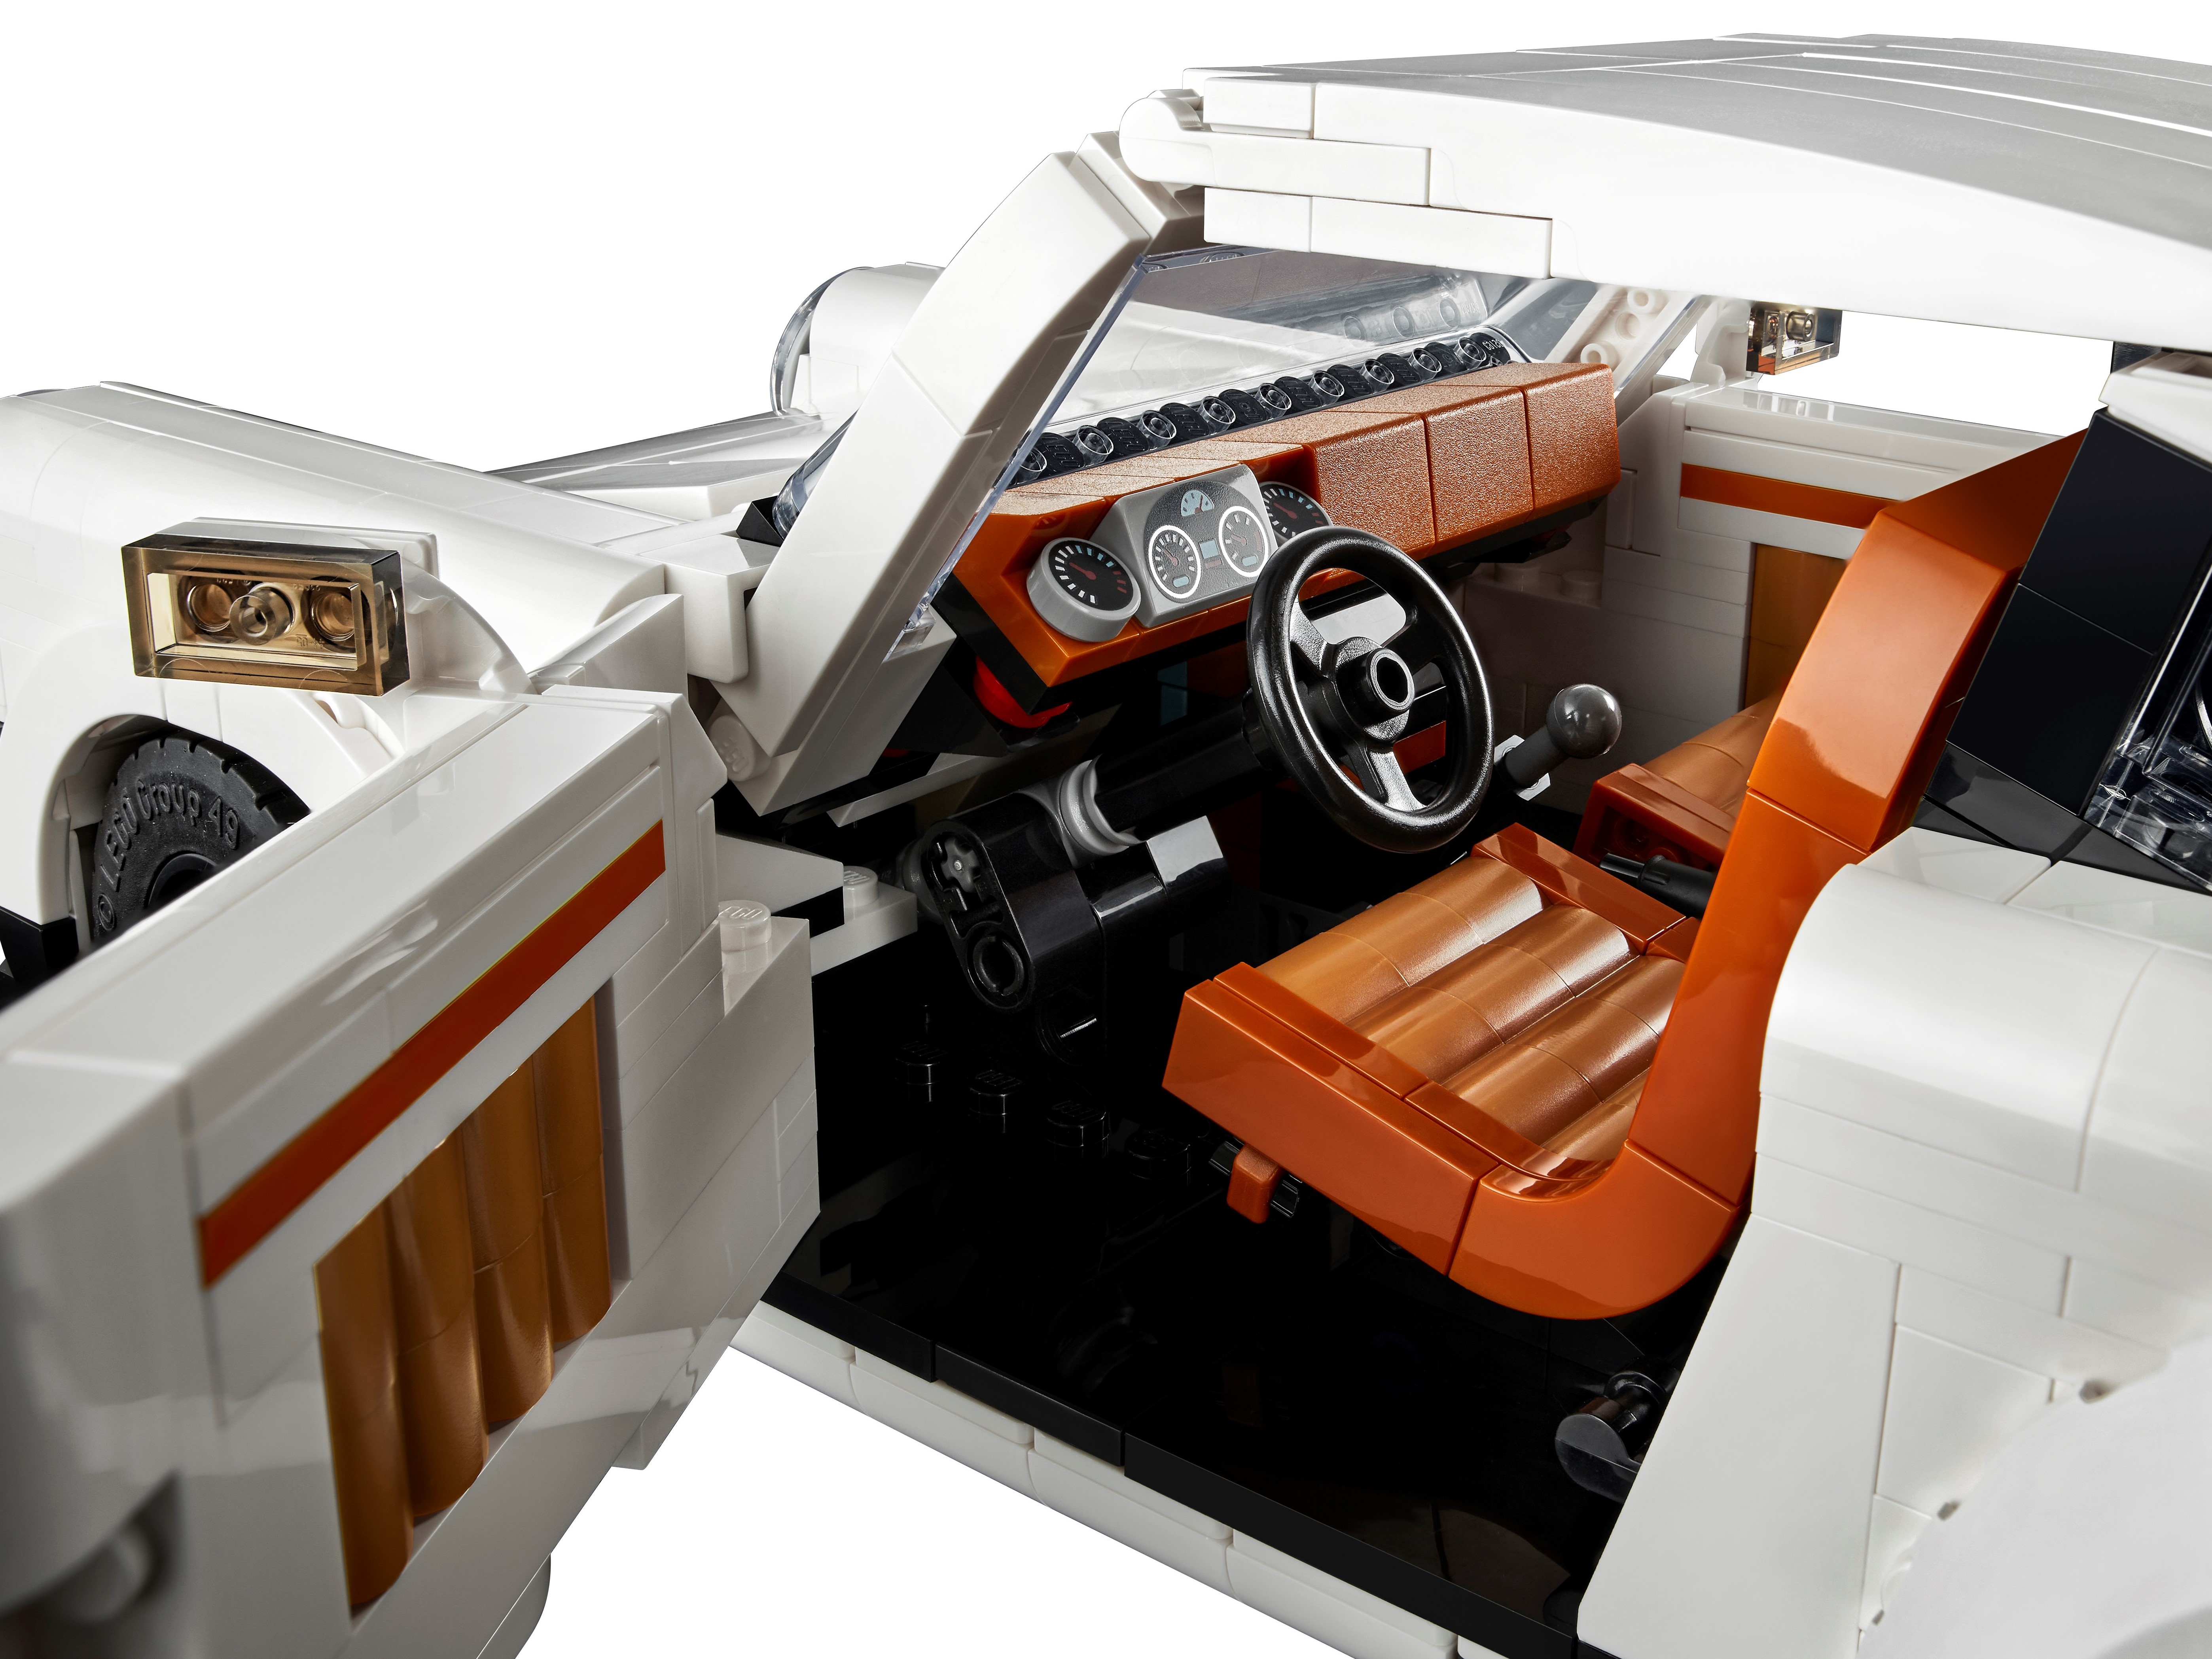 LEGO 10295 Porsche 911 Turbo & 911 Targa revealed as next Creator